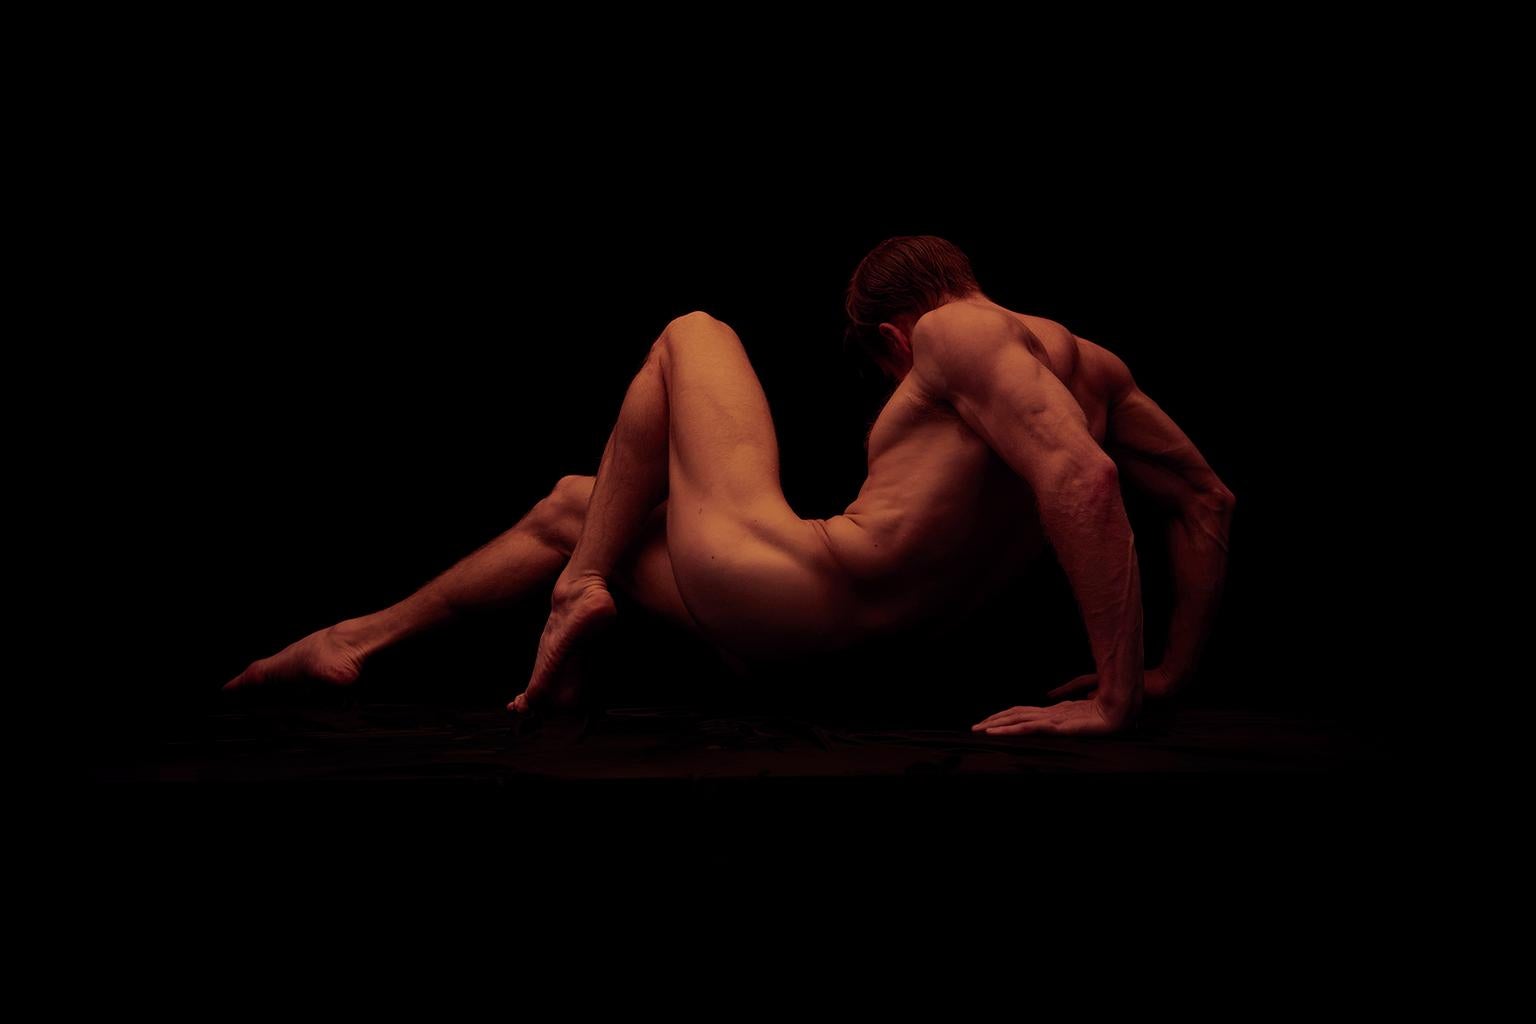 Ricky Cohete Nude Photograph – Momentum Dos. Momentum, Serie. Männlicher Akt Limitierte Auflage Farbfotografie